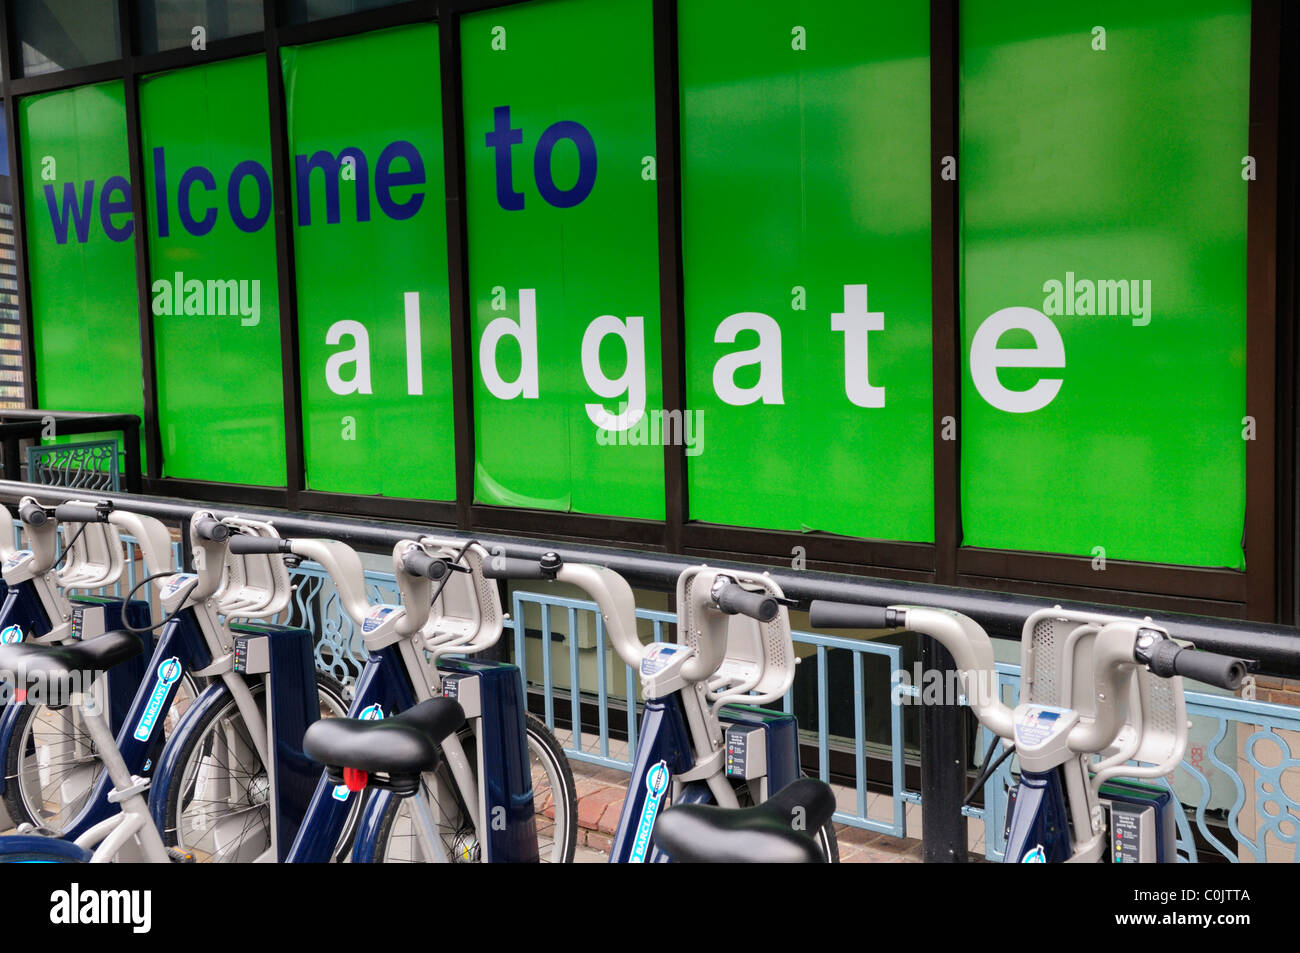 Willkommen bei Aldgate Schild mit Barclays Cycle Hire Schema Fahrräder, Aldgate, London, England, UK Stockfoto